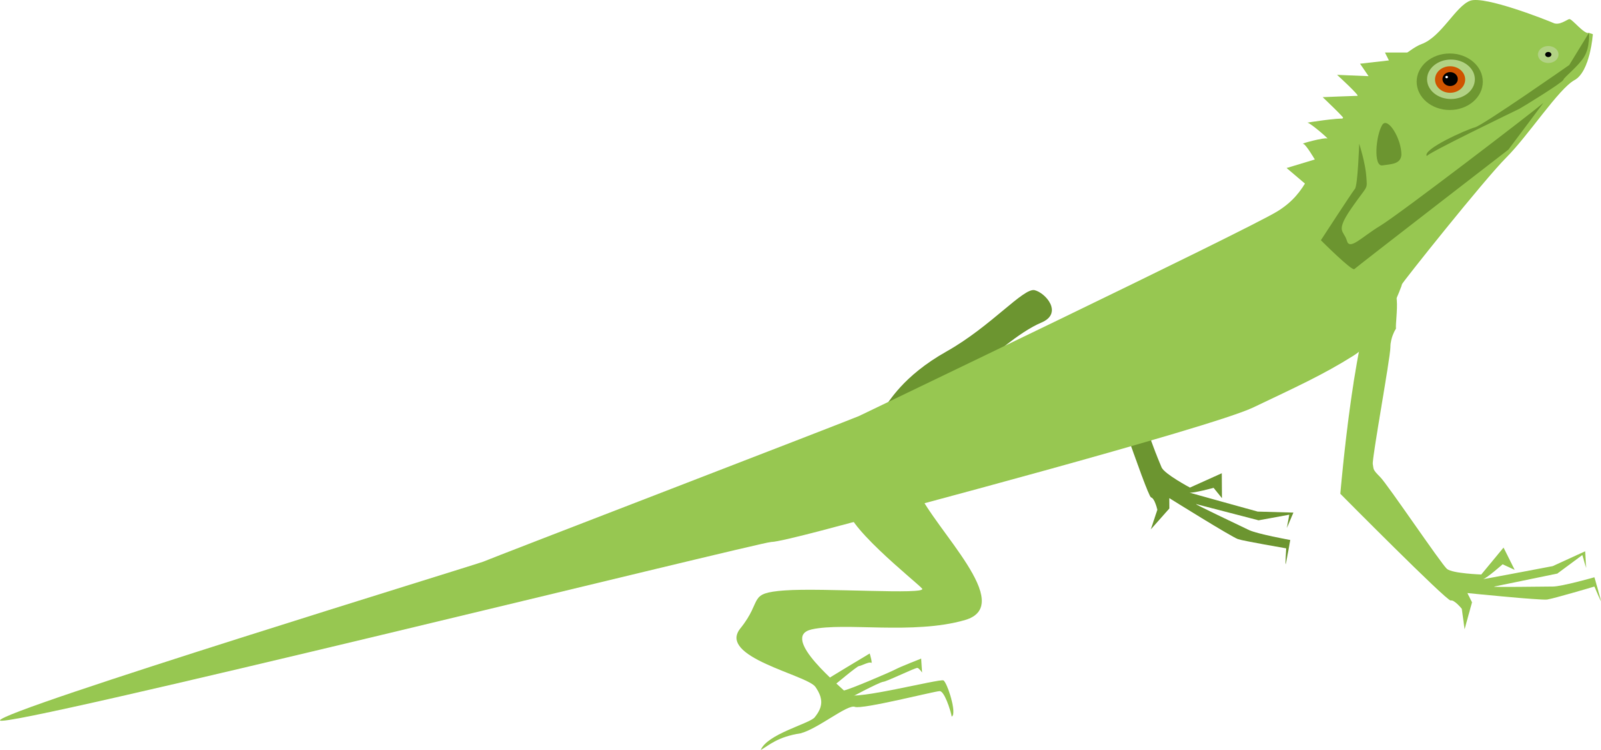 Green Iguana Illustration.png PNG